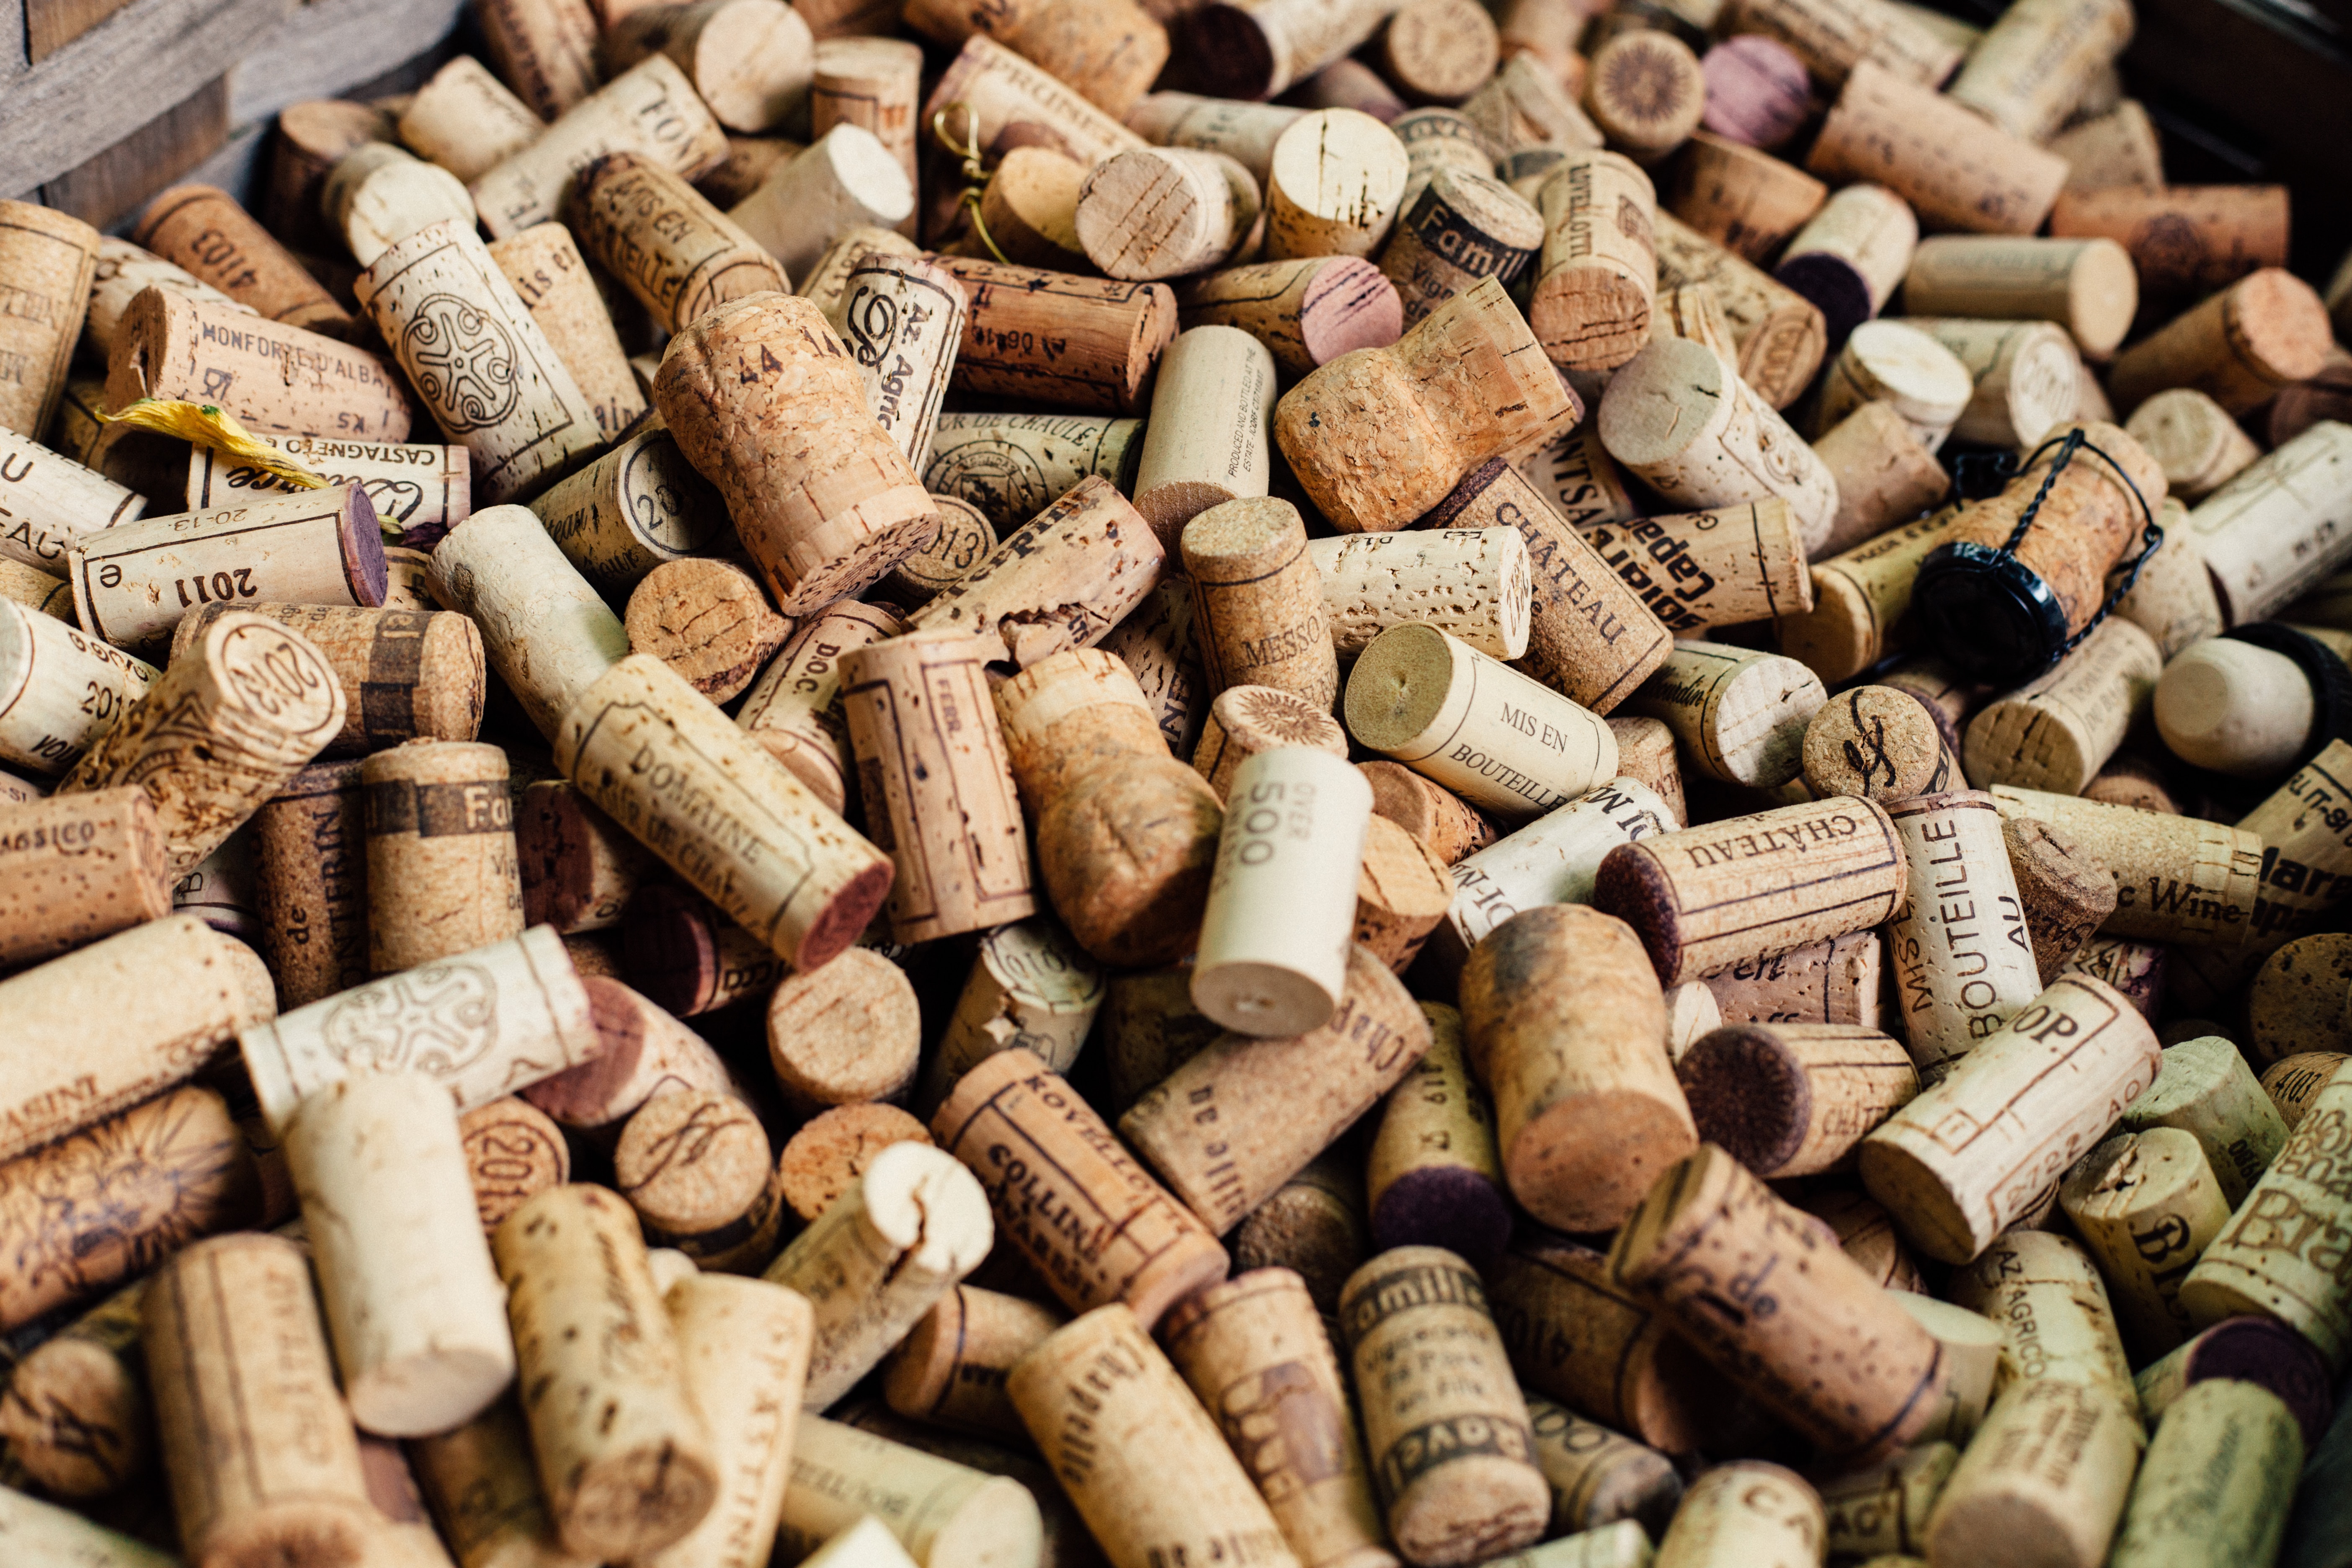 Hablemos de tapones para vinos: ¿corcho, plástico, tapa rosca